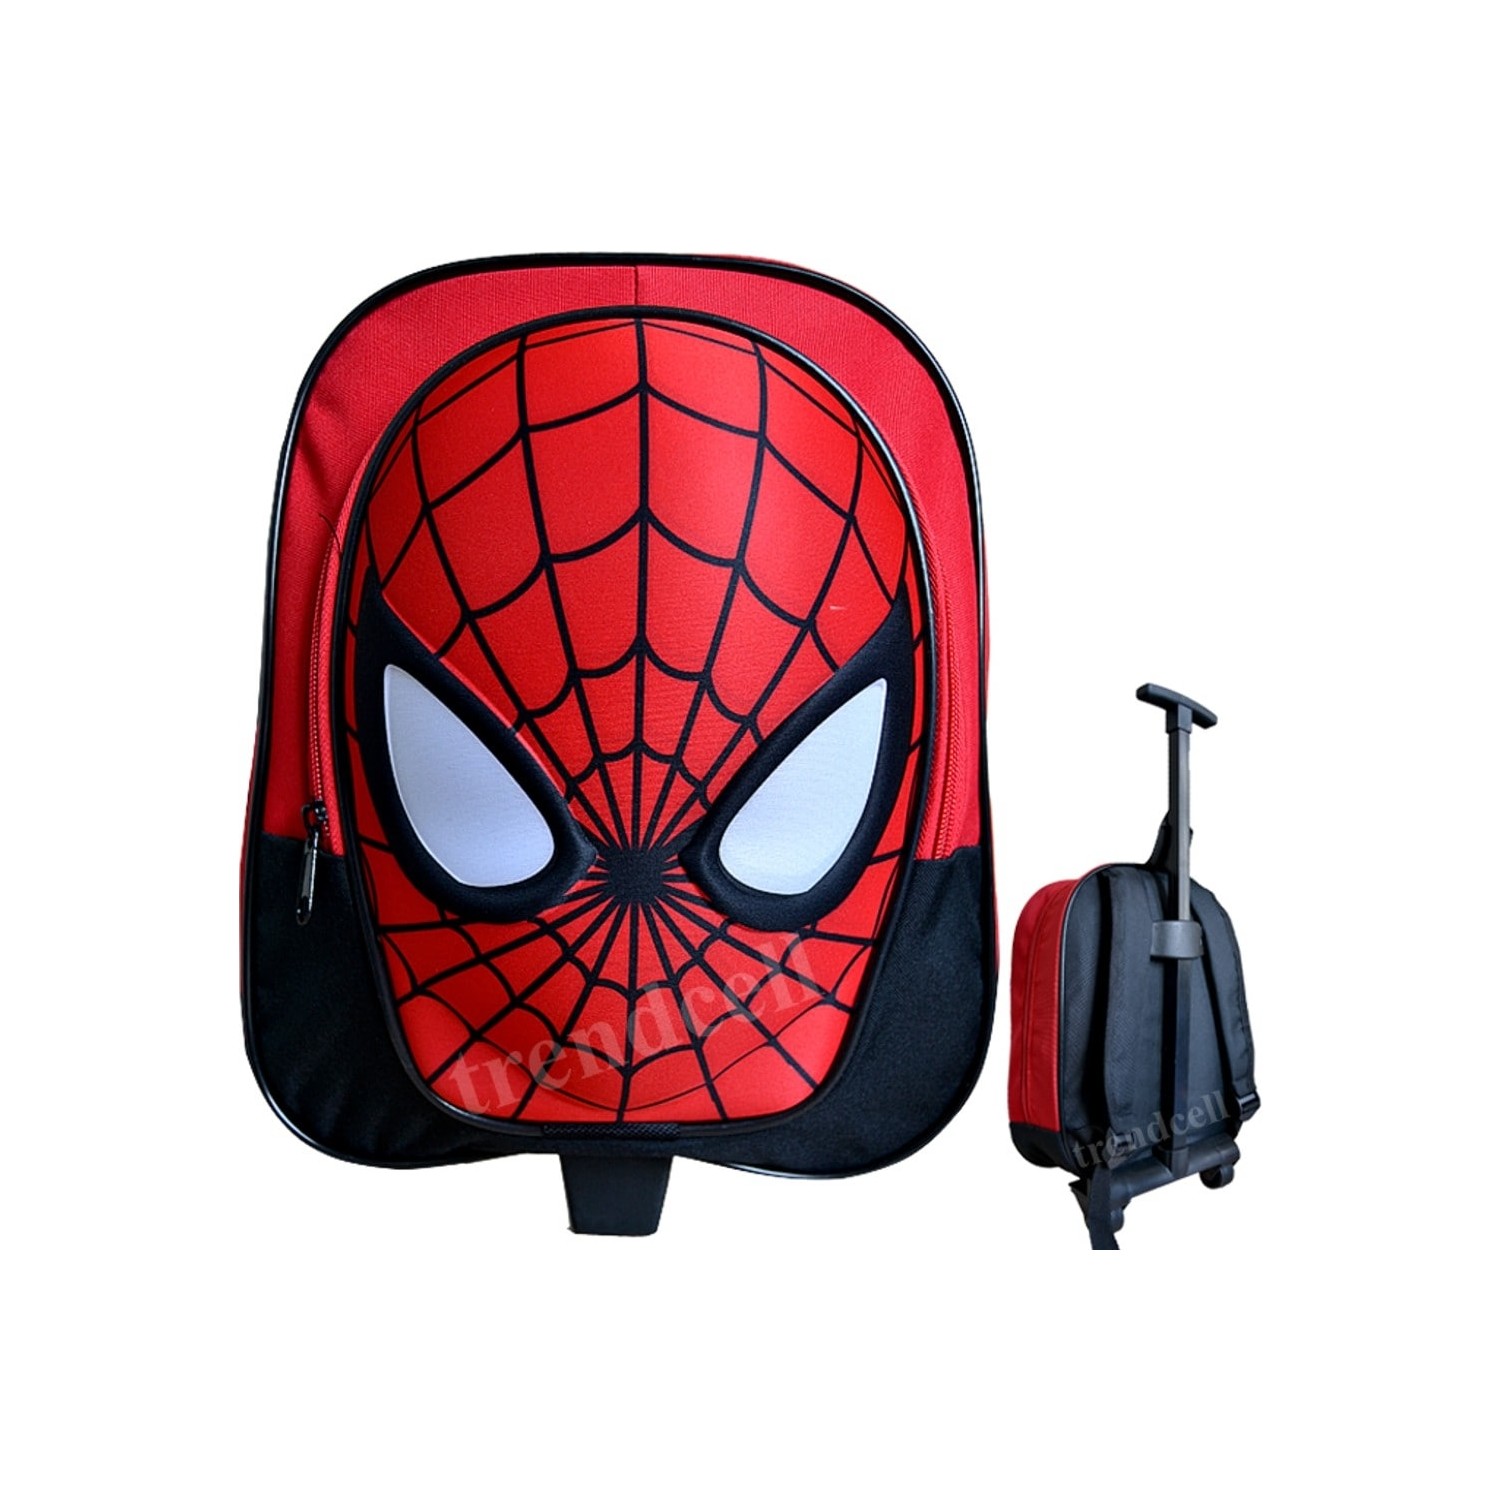 Spiderman Anaokulu Cantasi Orumcek Adam Cekcekli Tekerlekli Fiyati